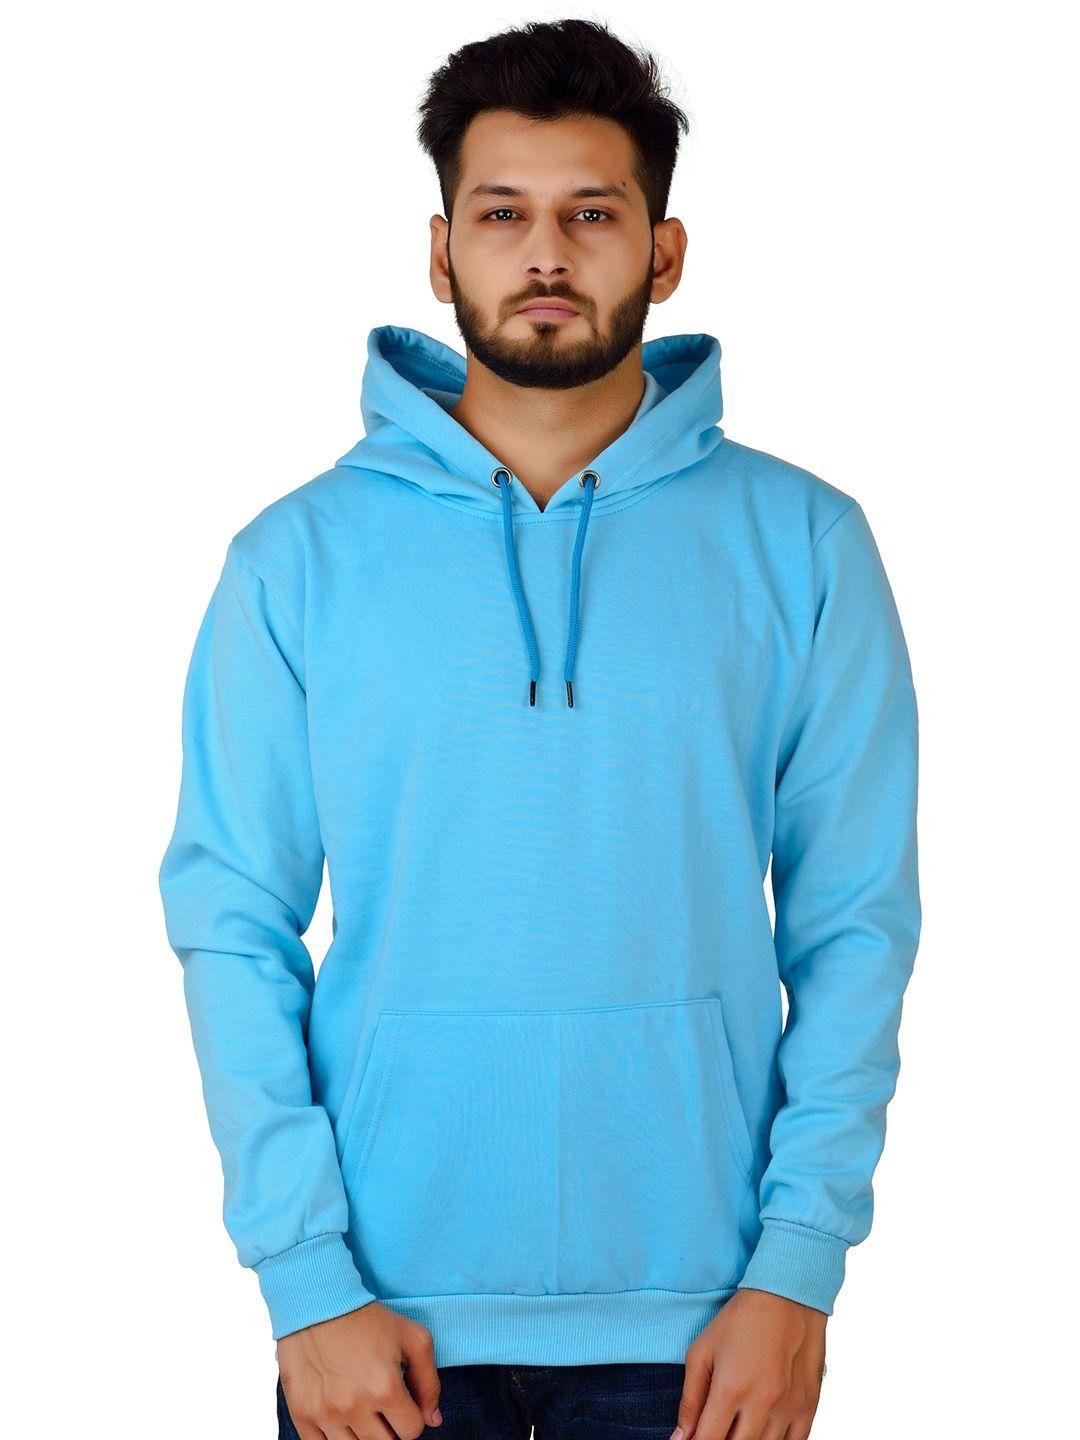 divra clothing unisex turquoise blue hooded sweatshirt